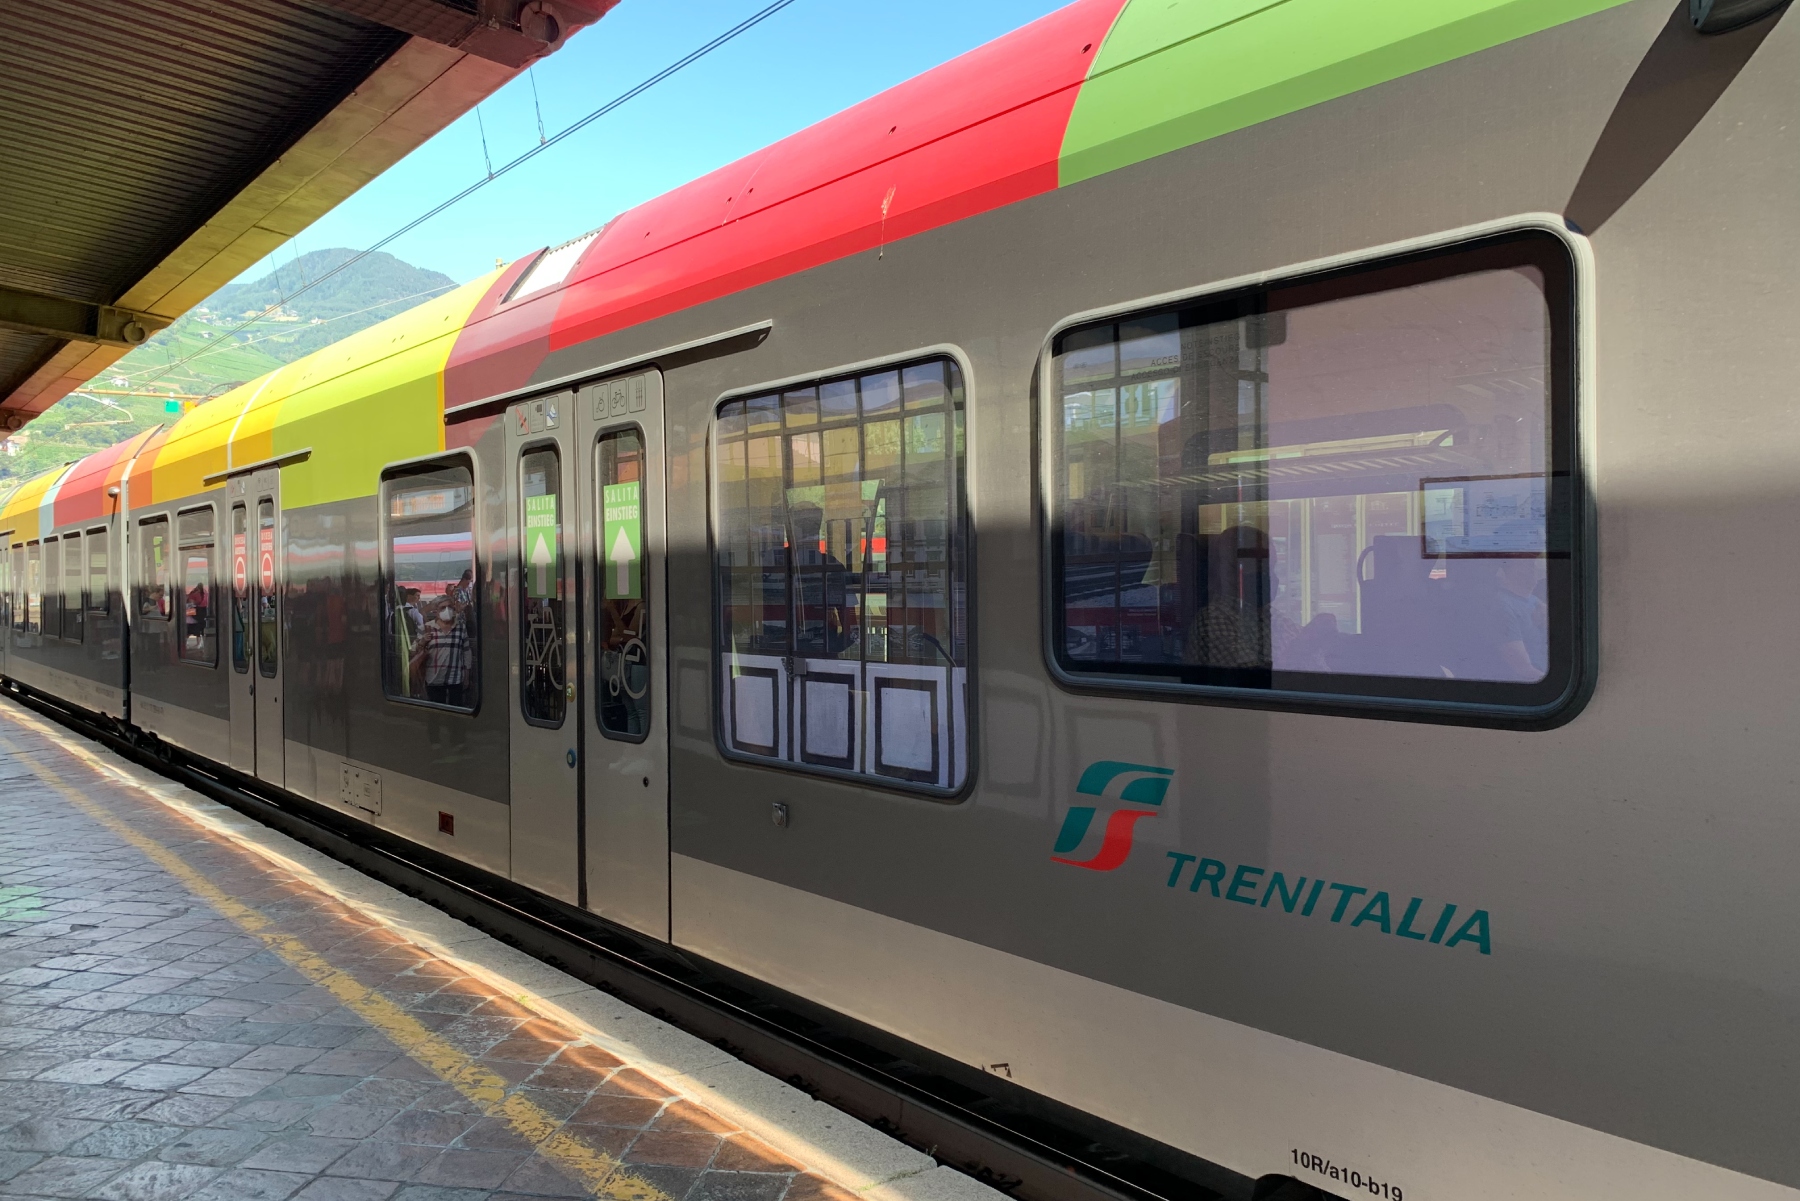 A Trenitalia train is pulled into Bolzano station